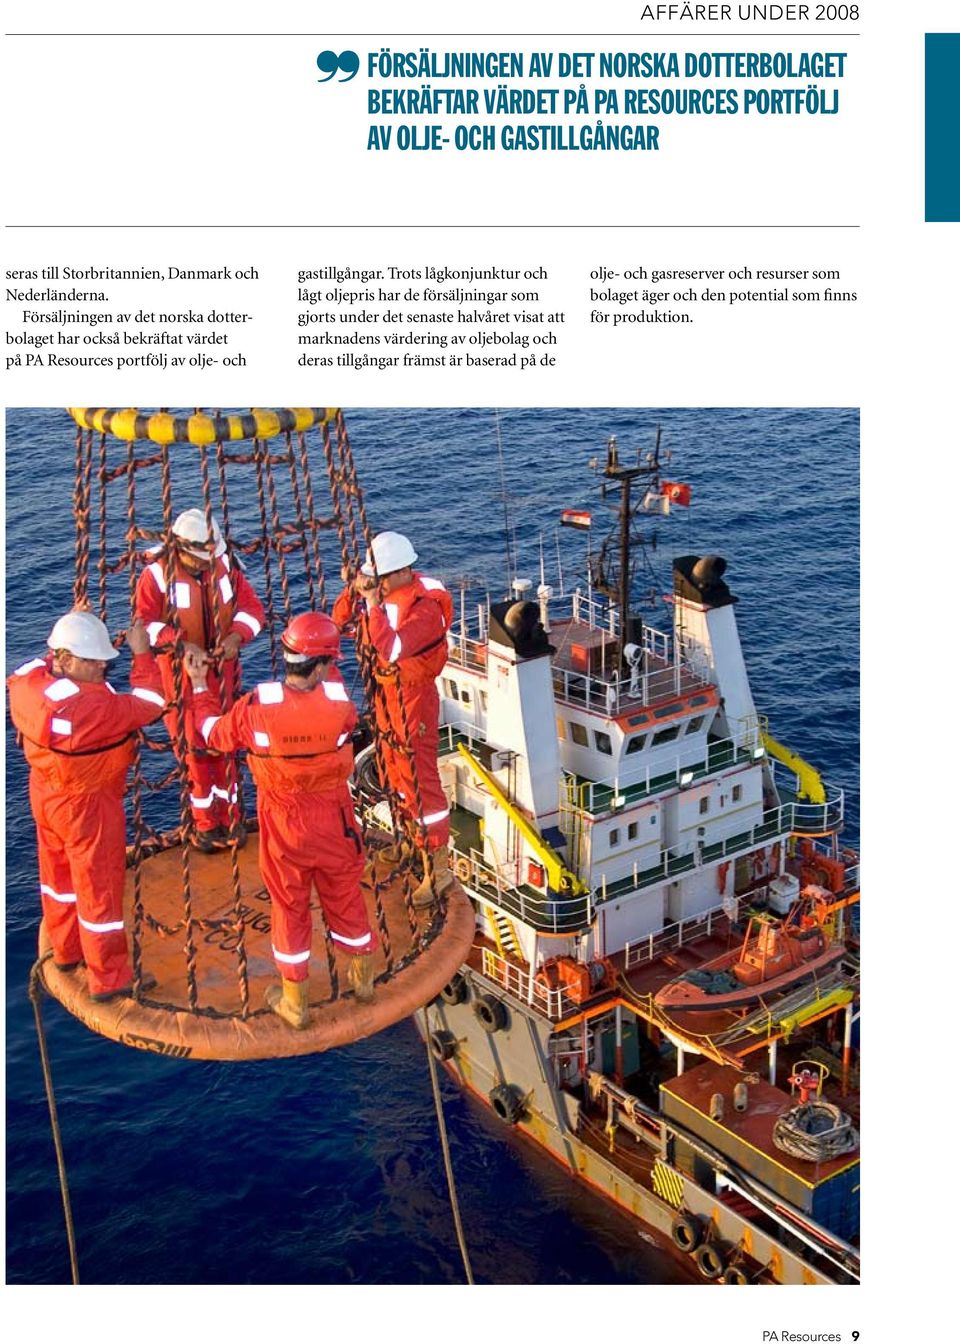 Försäljningen av det norska dotterbolaget har också bekräftat värdet på PA Resources portfölj av olje- och gastillgångar.